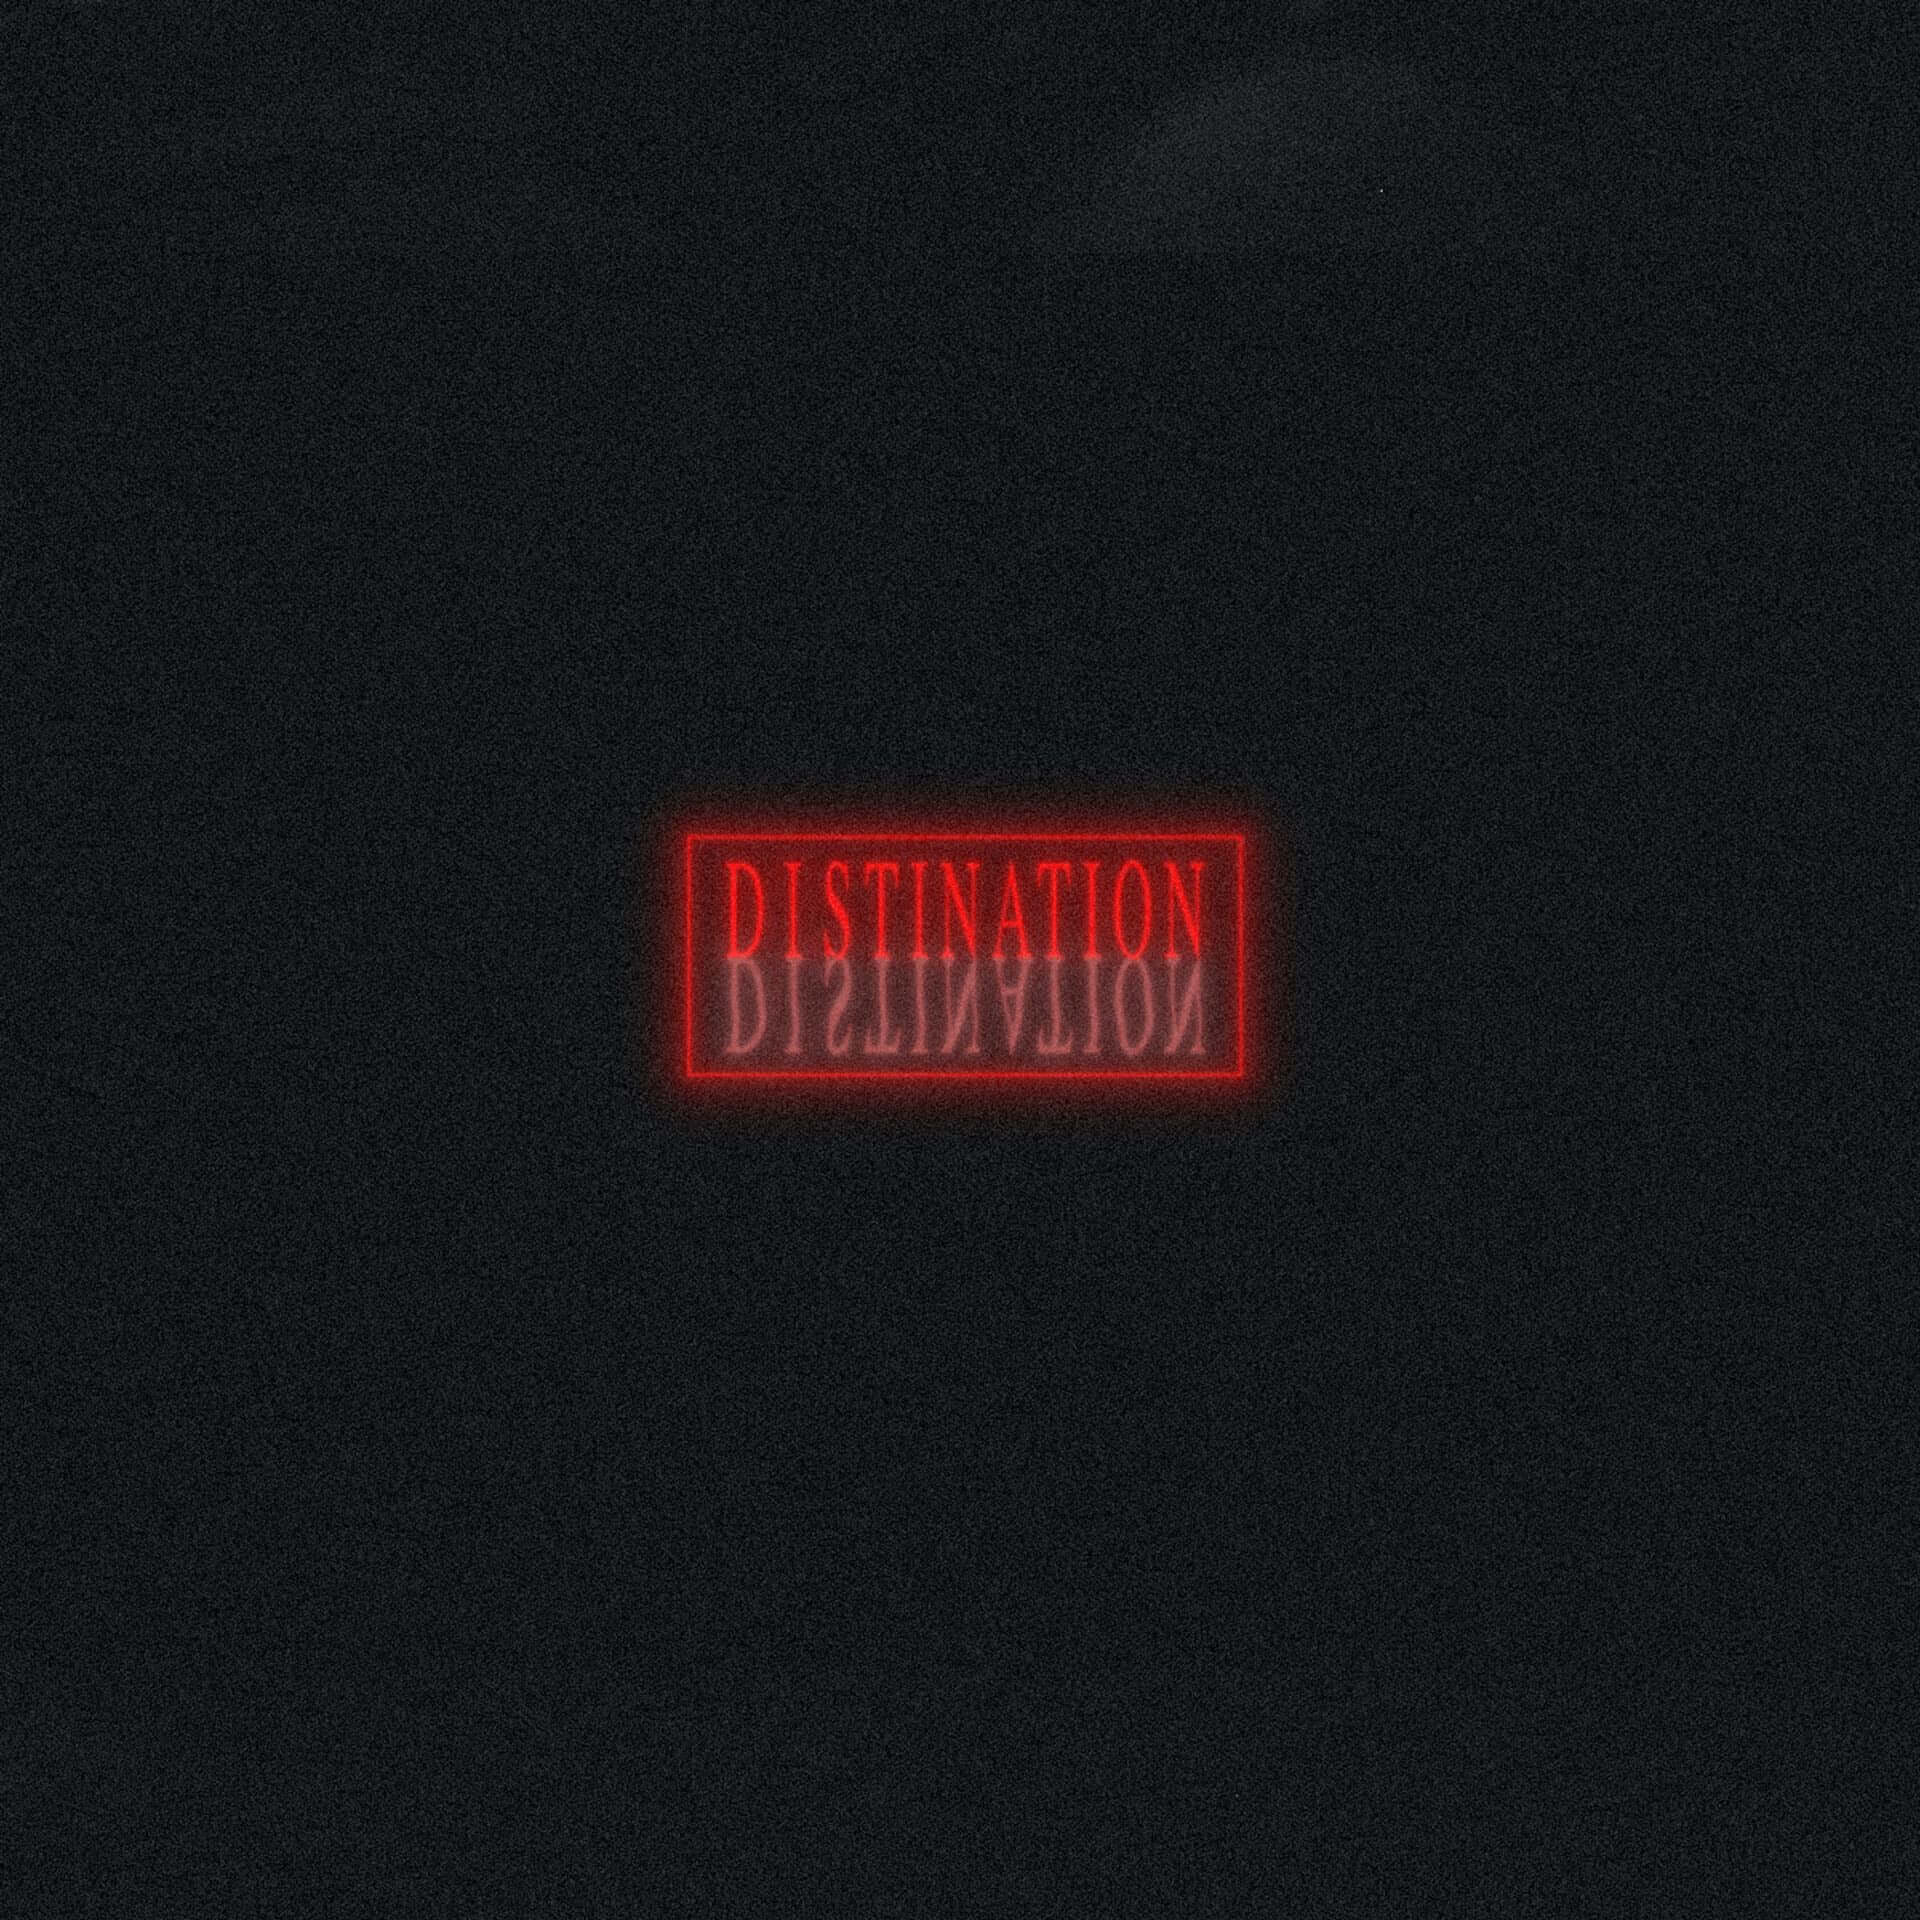 SeihoがアンビエントミュージックBOX作品『DISTINATION』を発売。100セット限定で受注生産